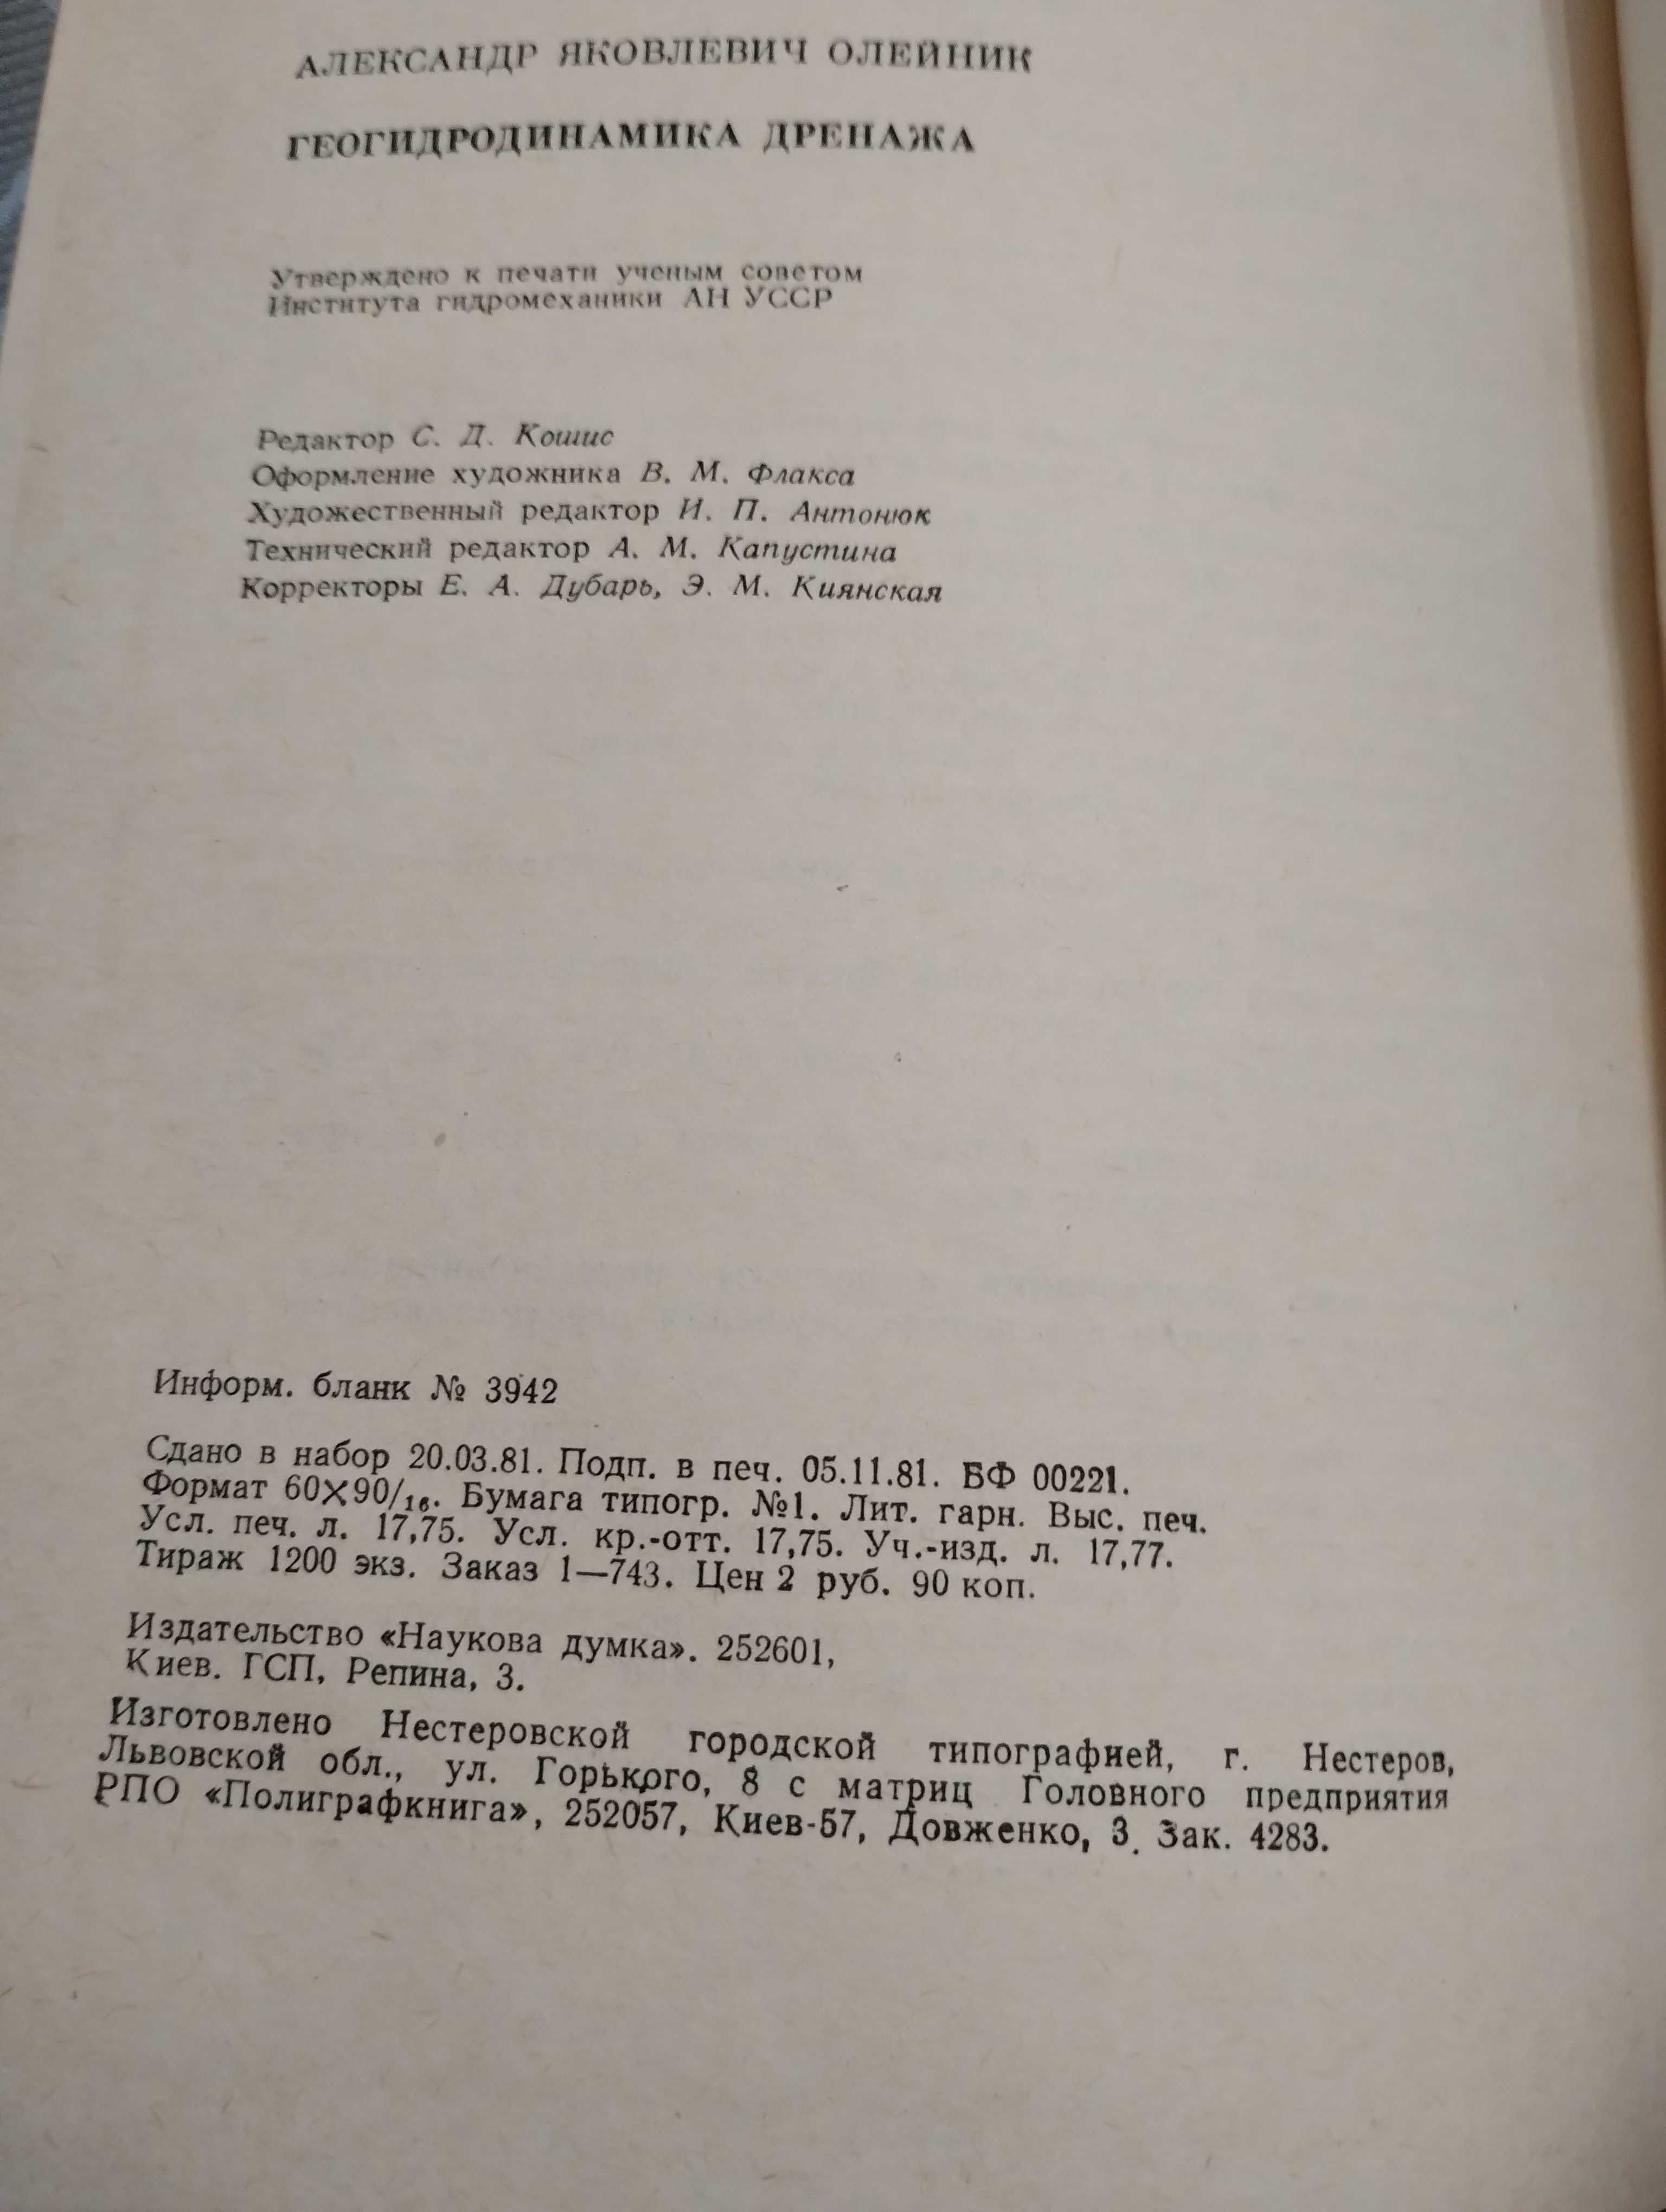 Уникальная книга с автографом "Геогидродинамика дренажа" Олейник 1981